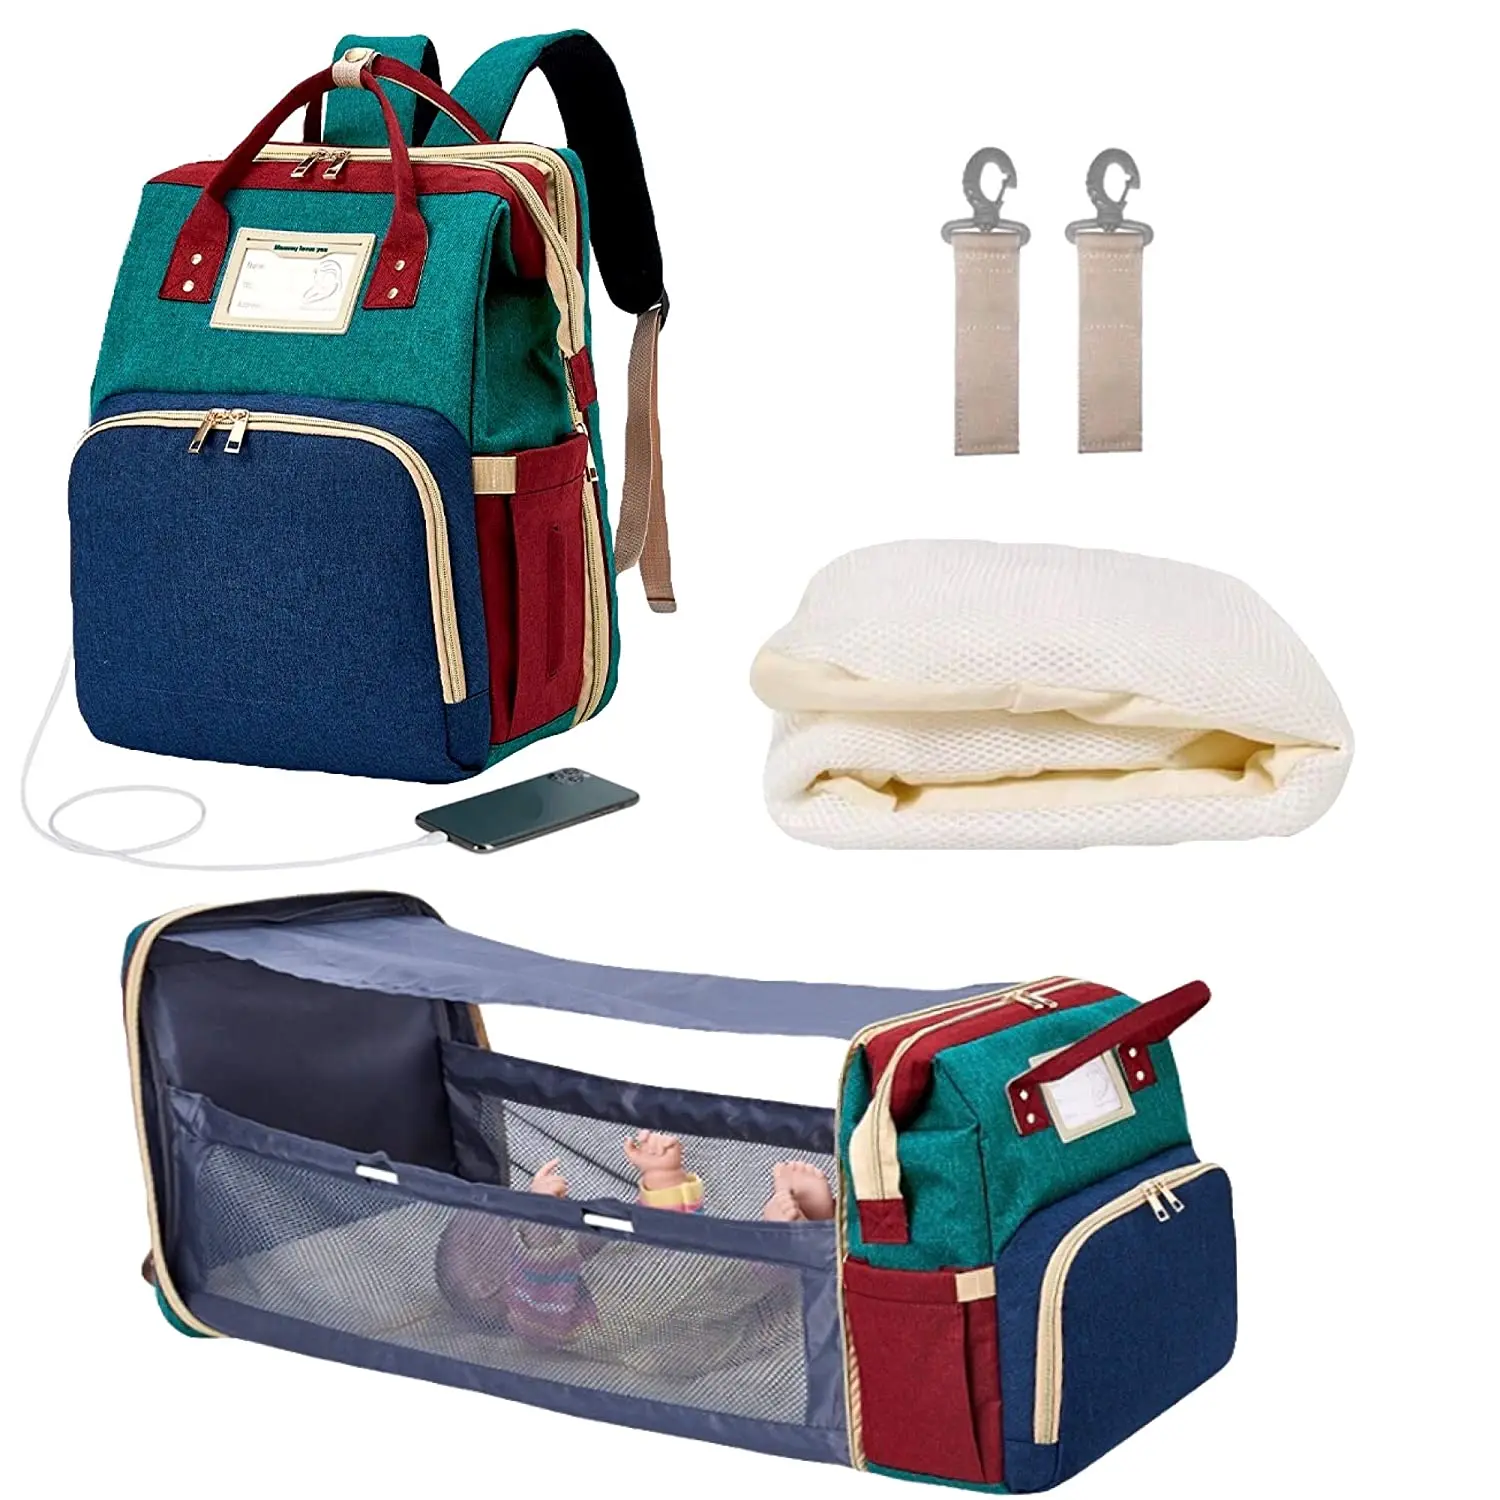 складная детская кроватка 3в1, сумка для подгузников для мамы, Органайзер, Переносная Дорожная станция для смены подгузников с USB-портом для зарядки - 5